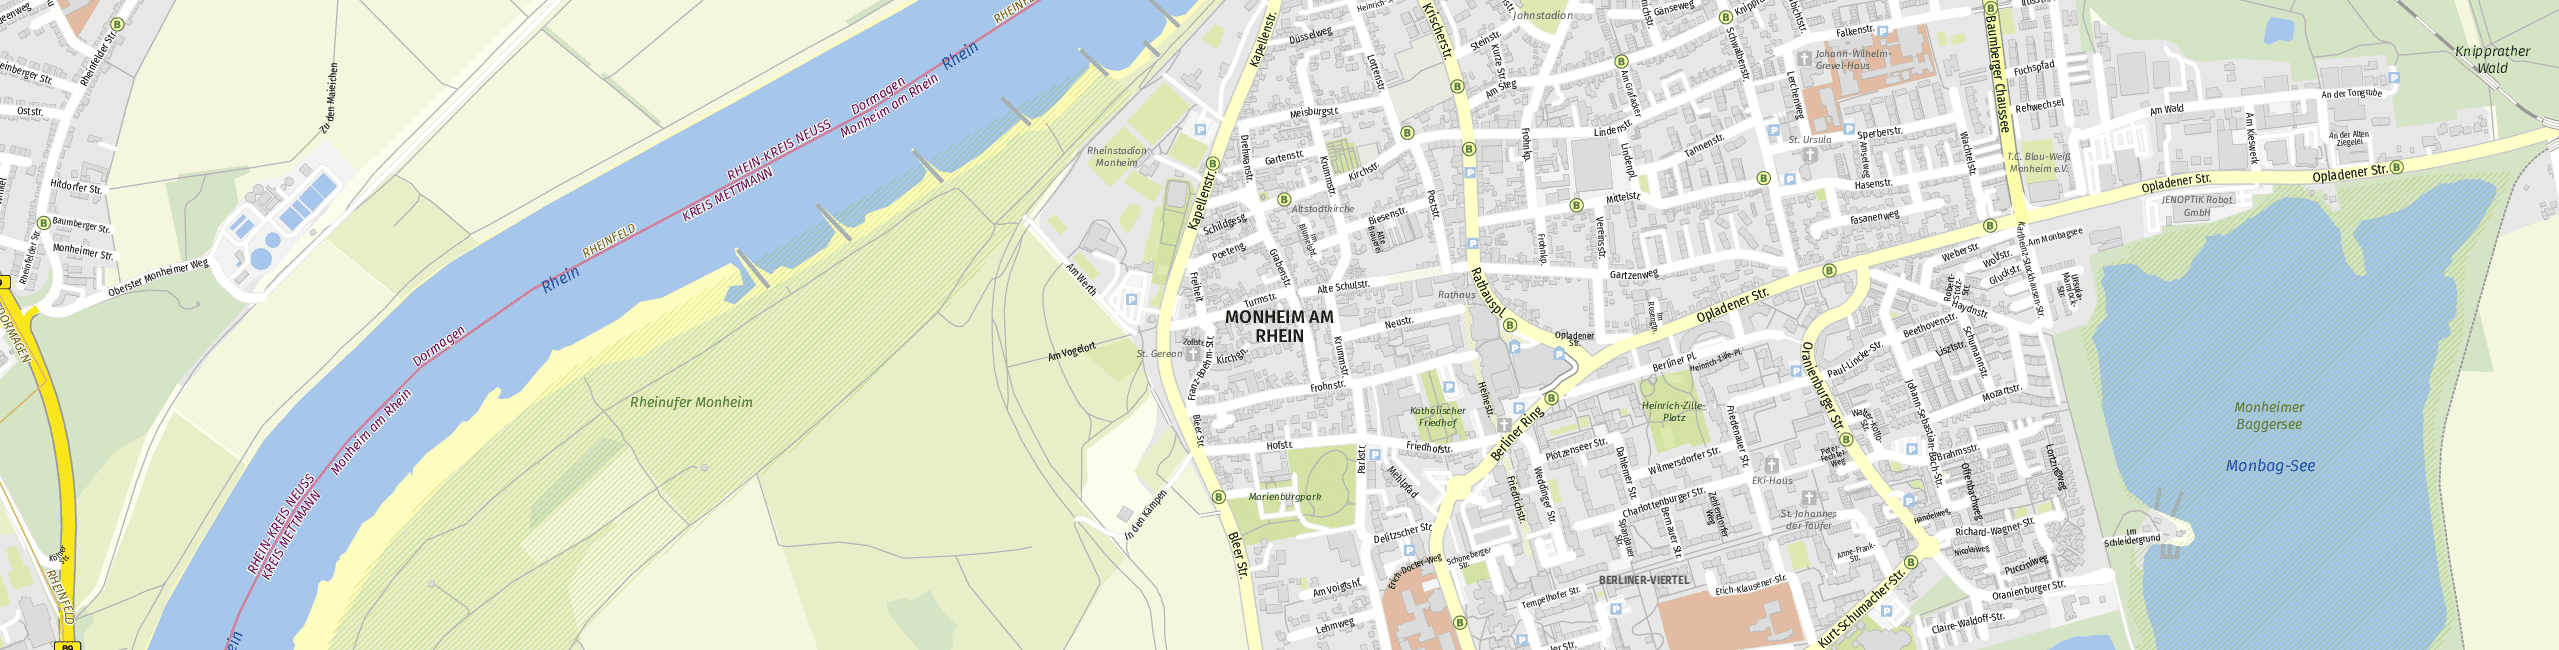 Stadtplan Monheim am Rhein zum Downloaden.